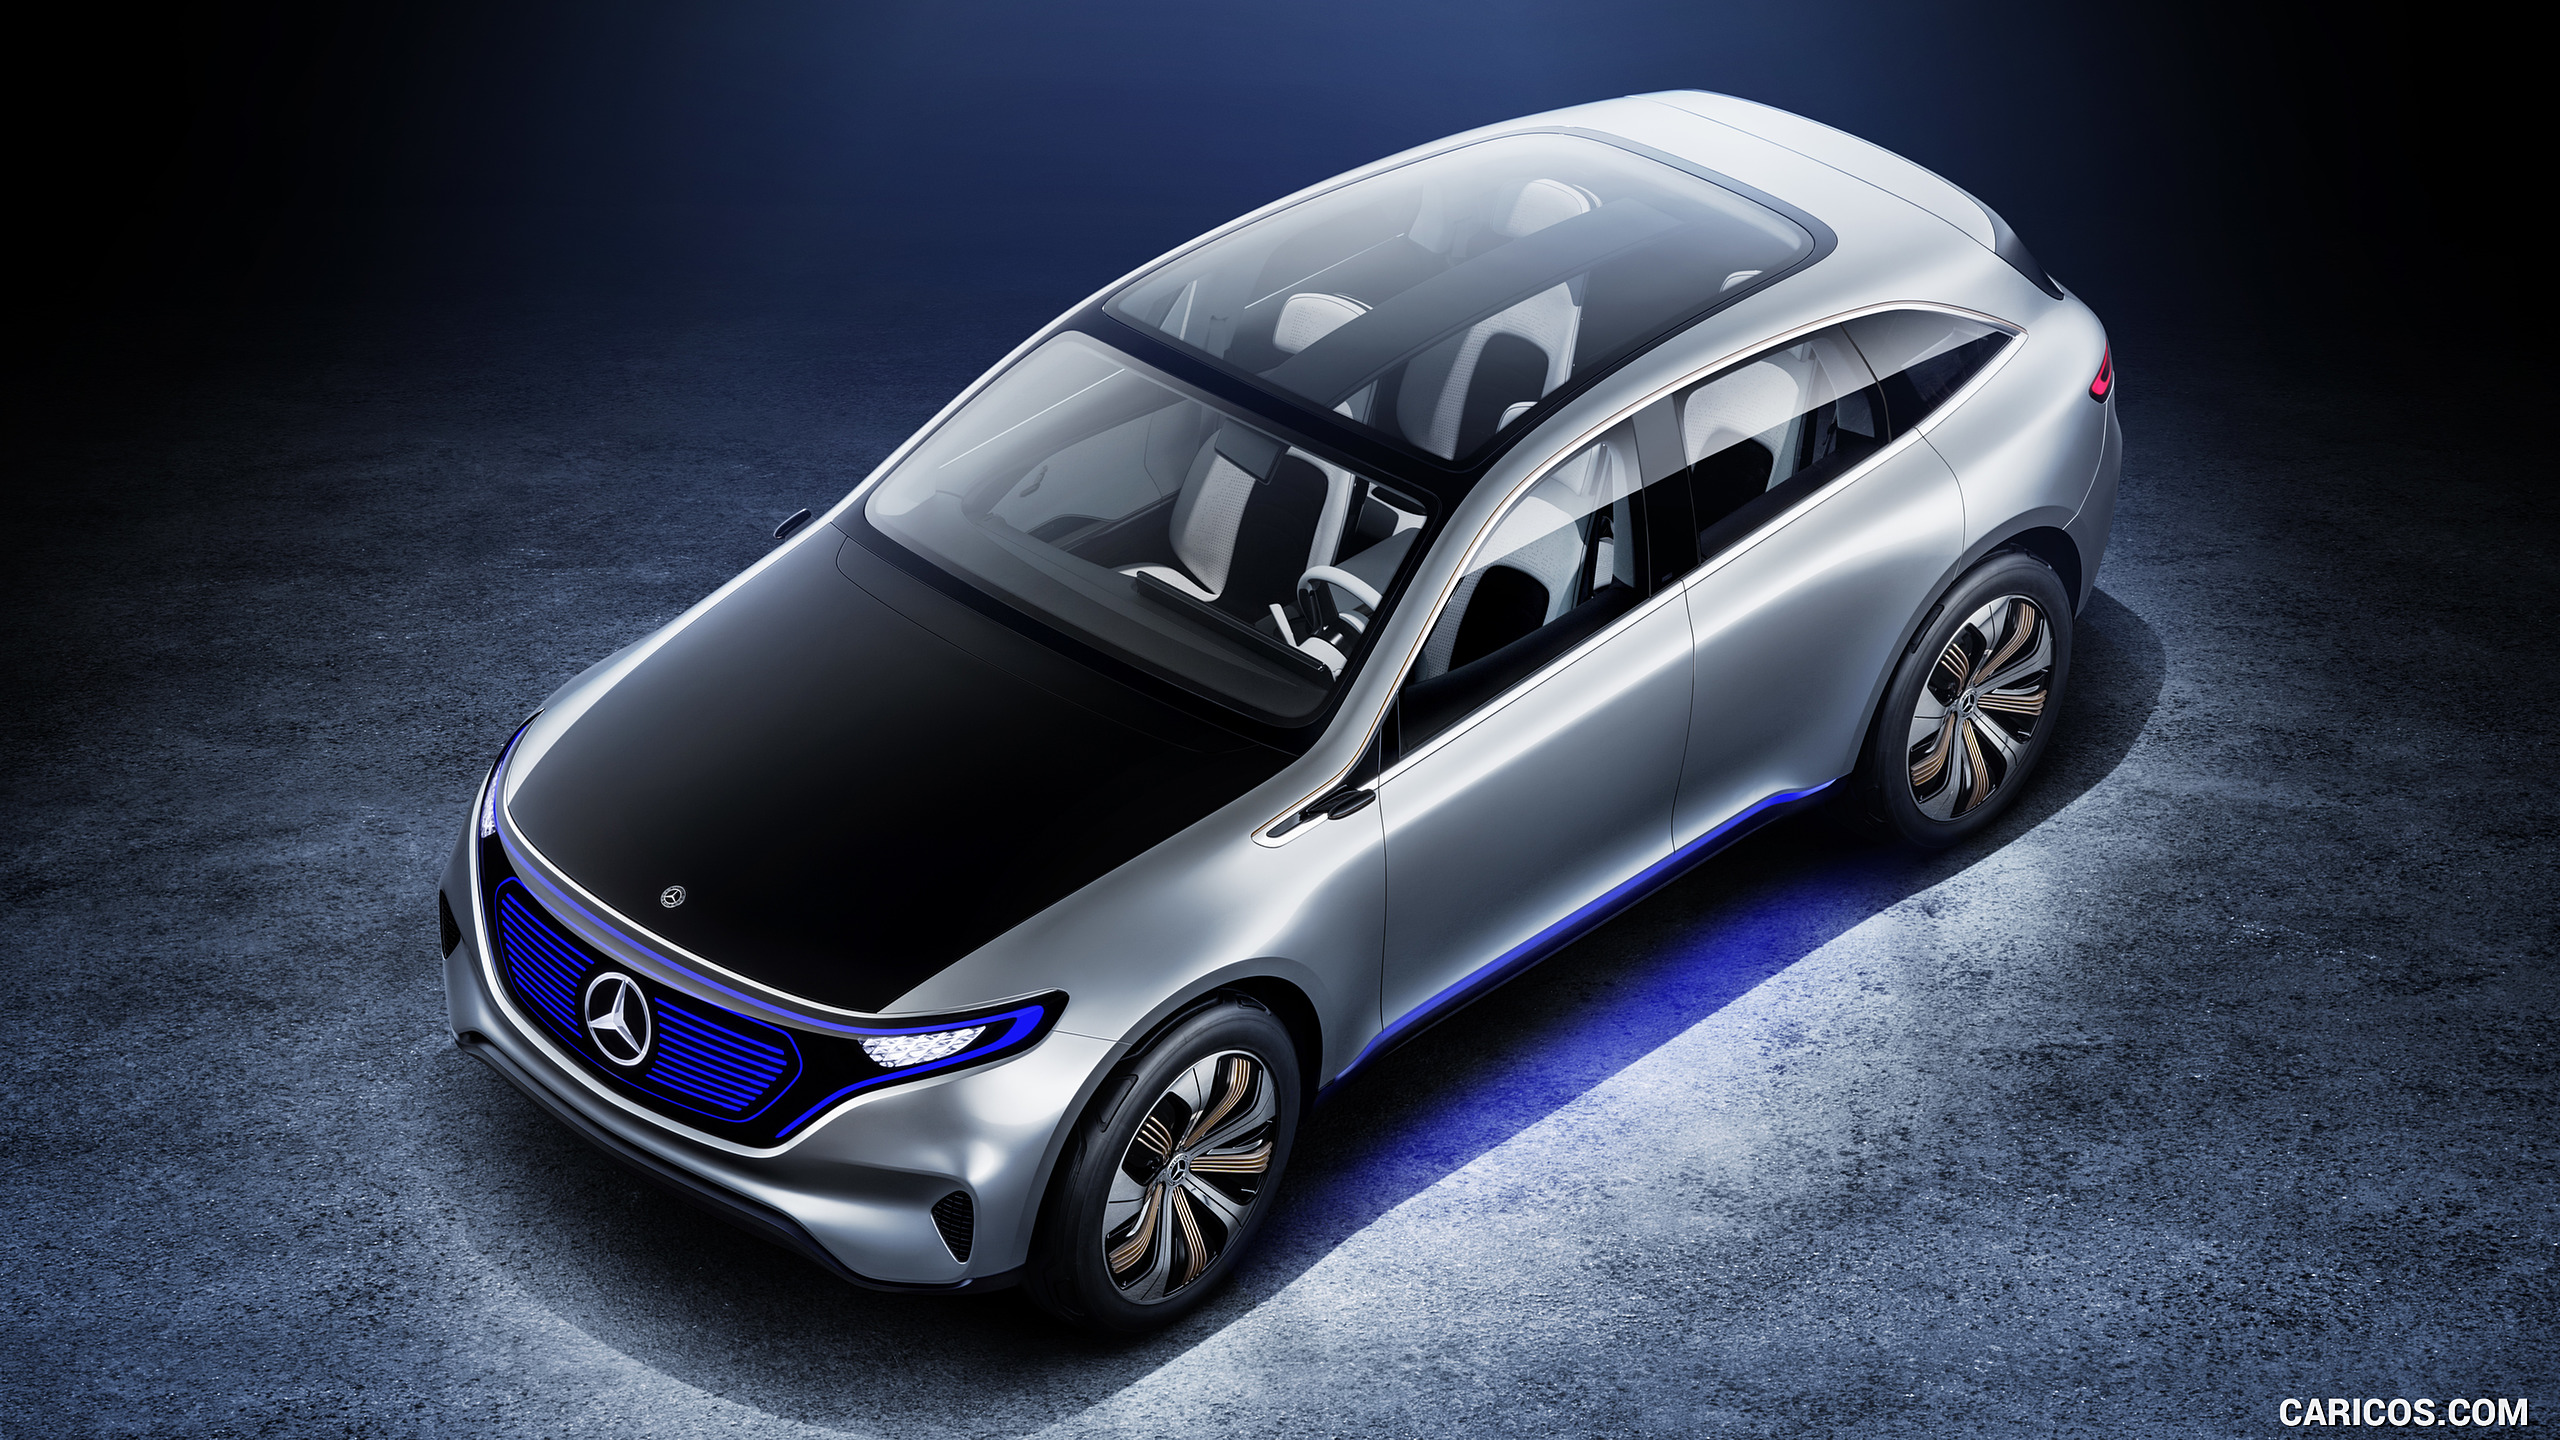 2016 Mercedes-Benz Generation EQ SUV Concept - Top, #35 of 50